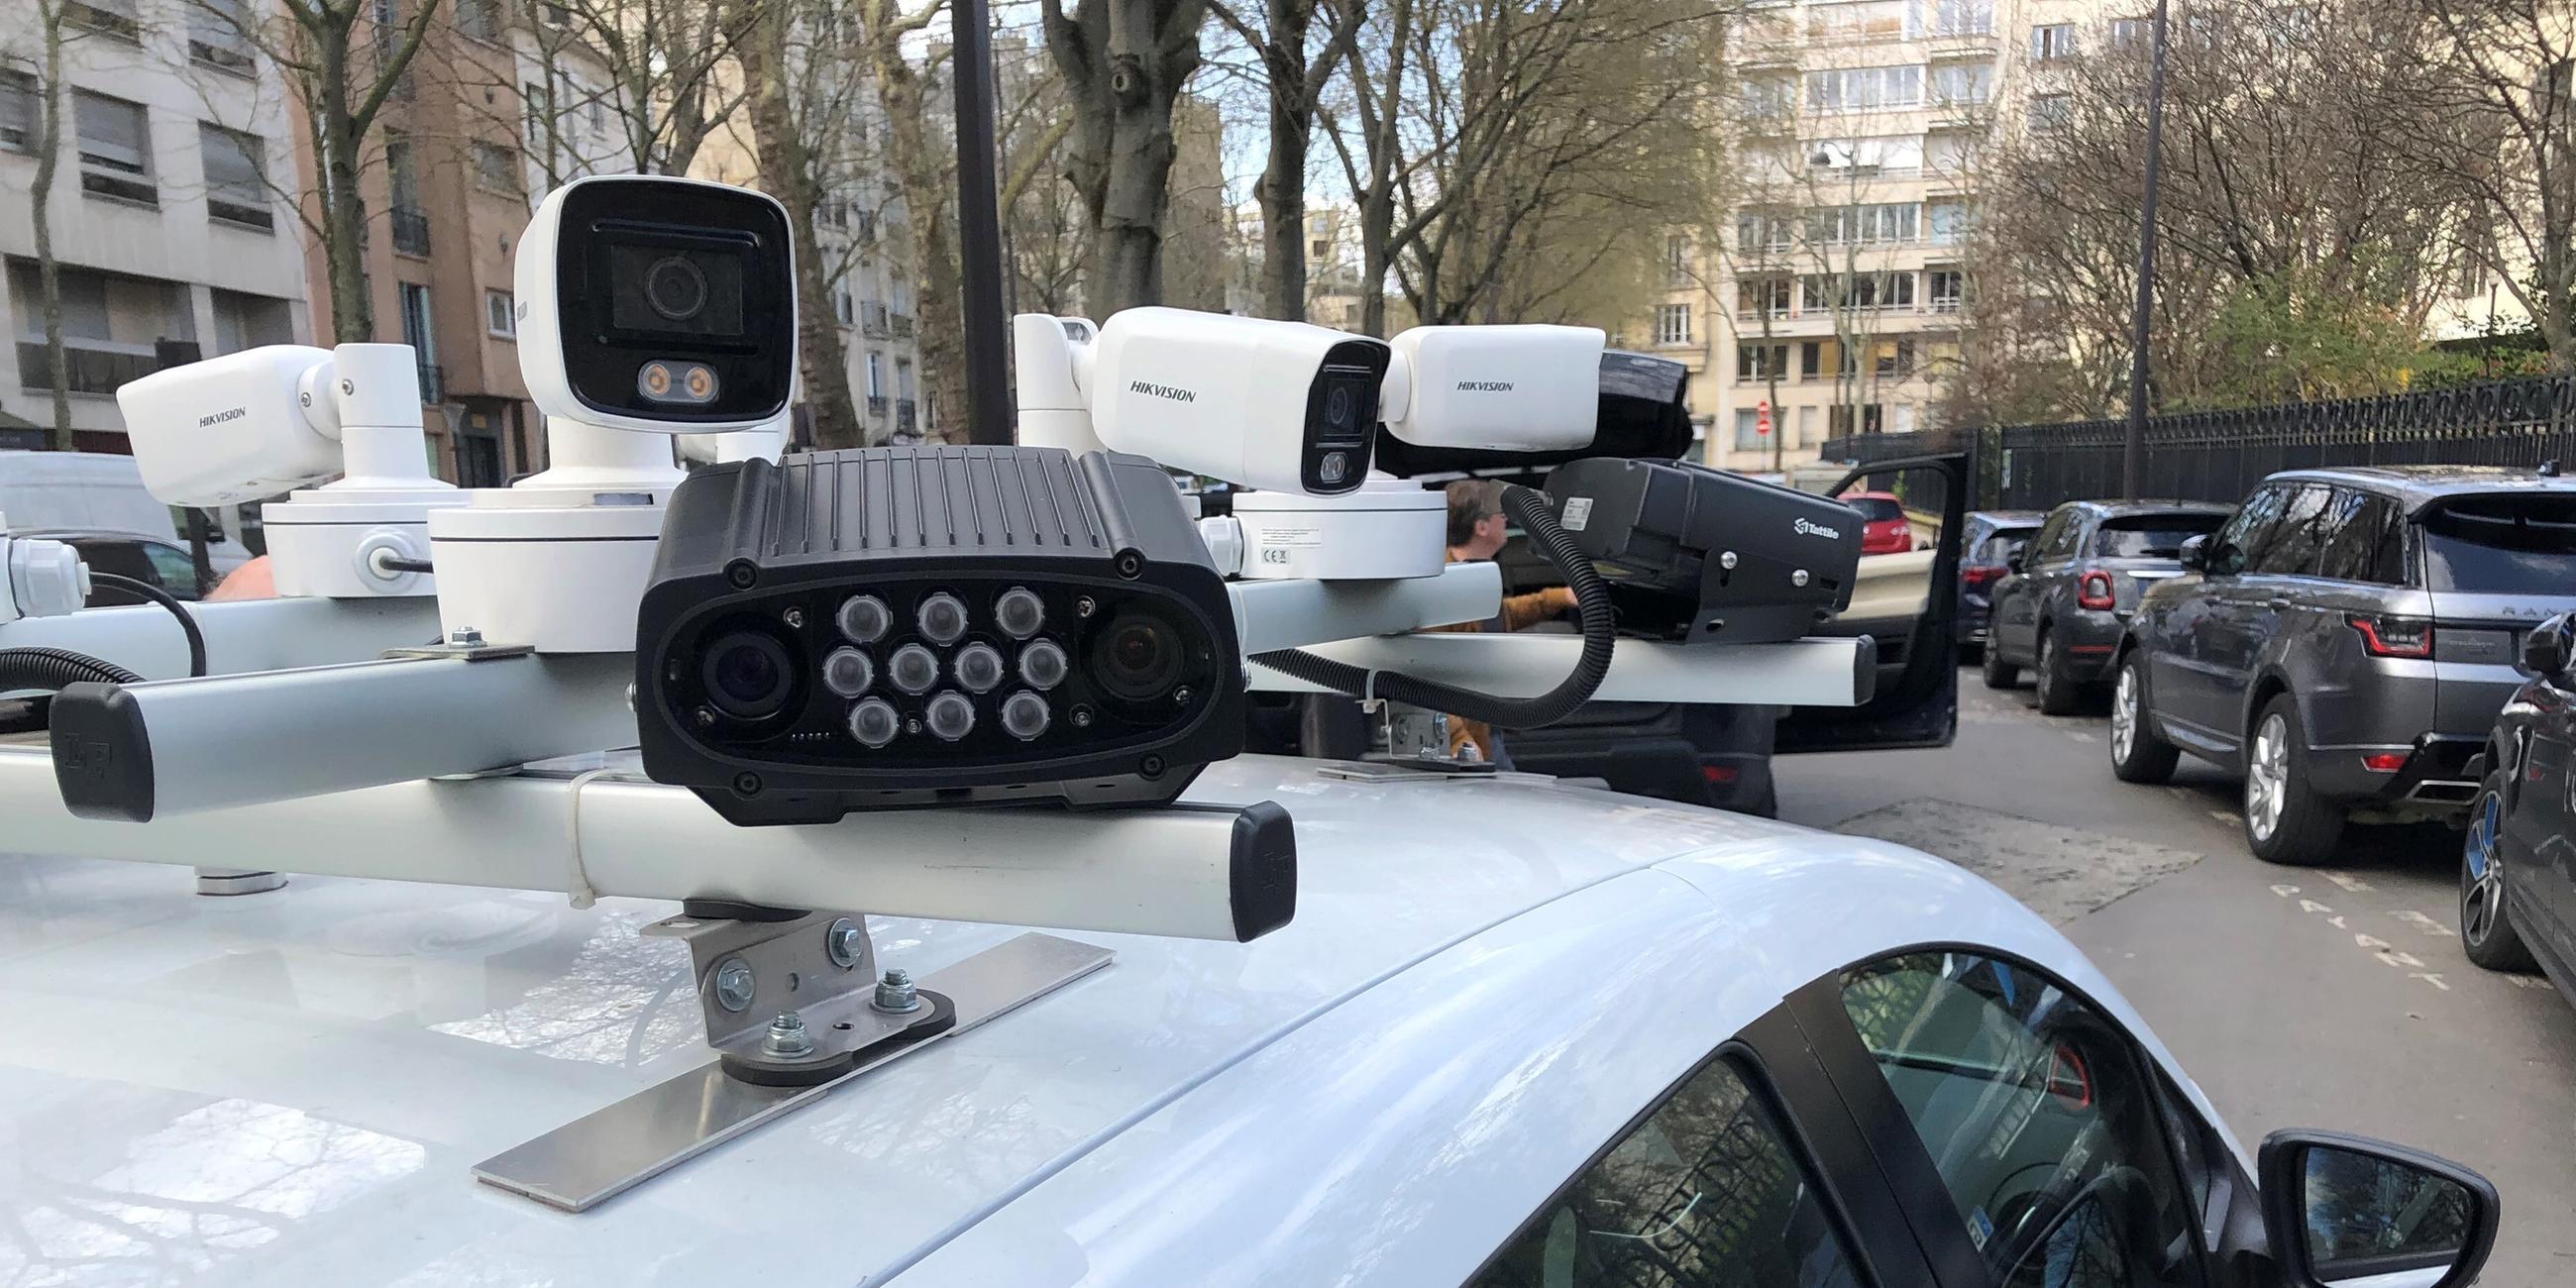 Kameras auf dem Dach eines Scan-Autos kontrollieren, ob für abgestellte Autos die Parkgebühren bezahlt wurden.